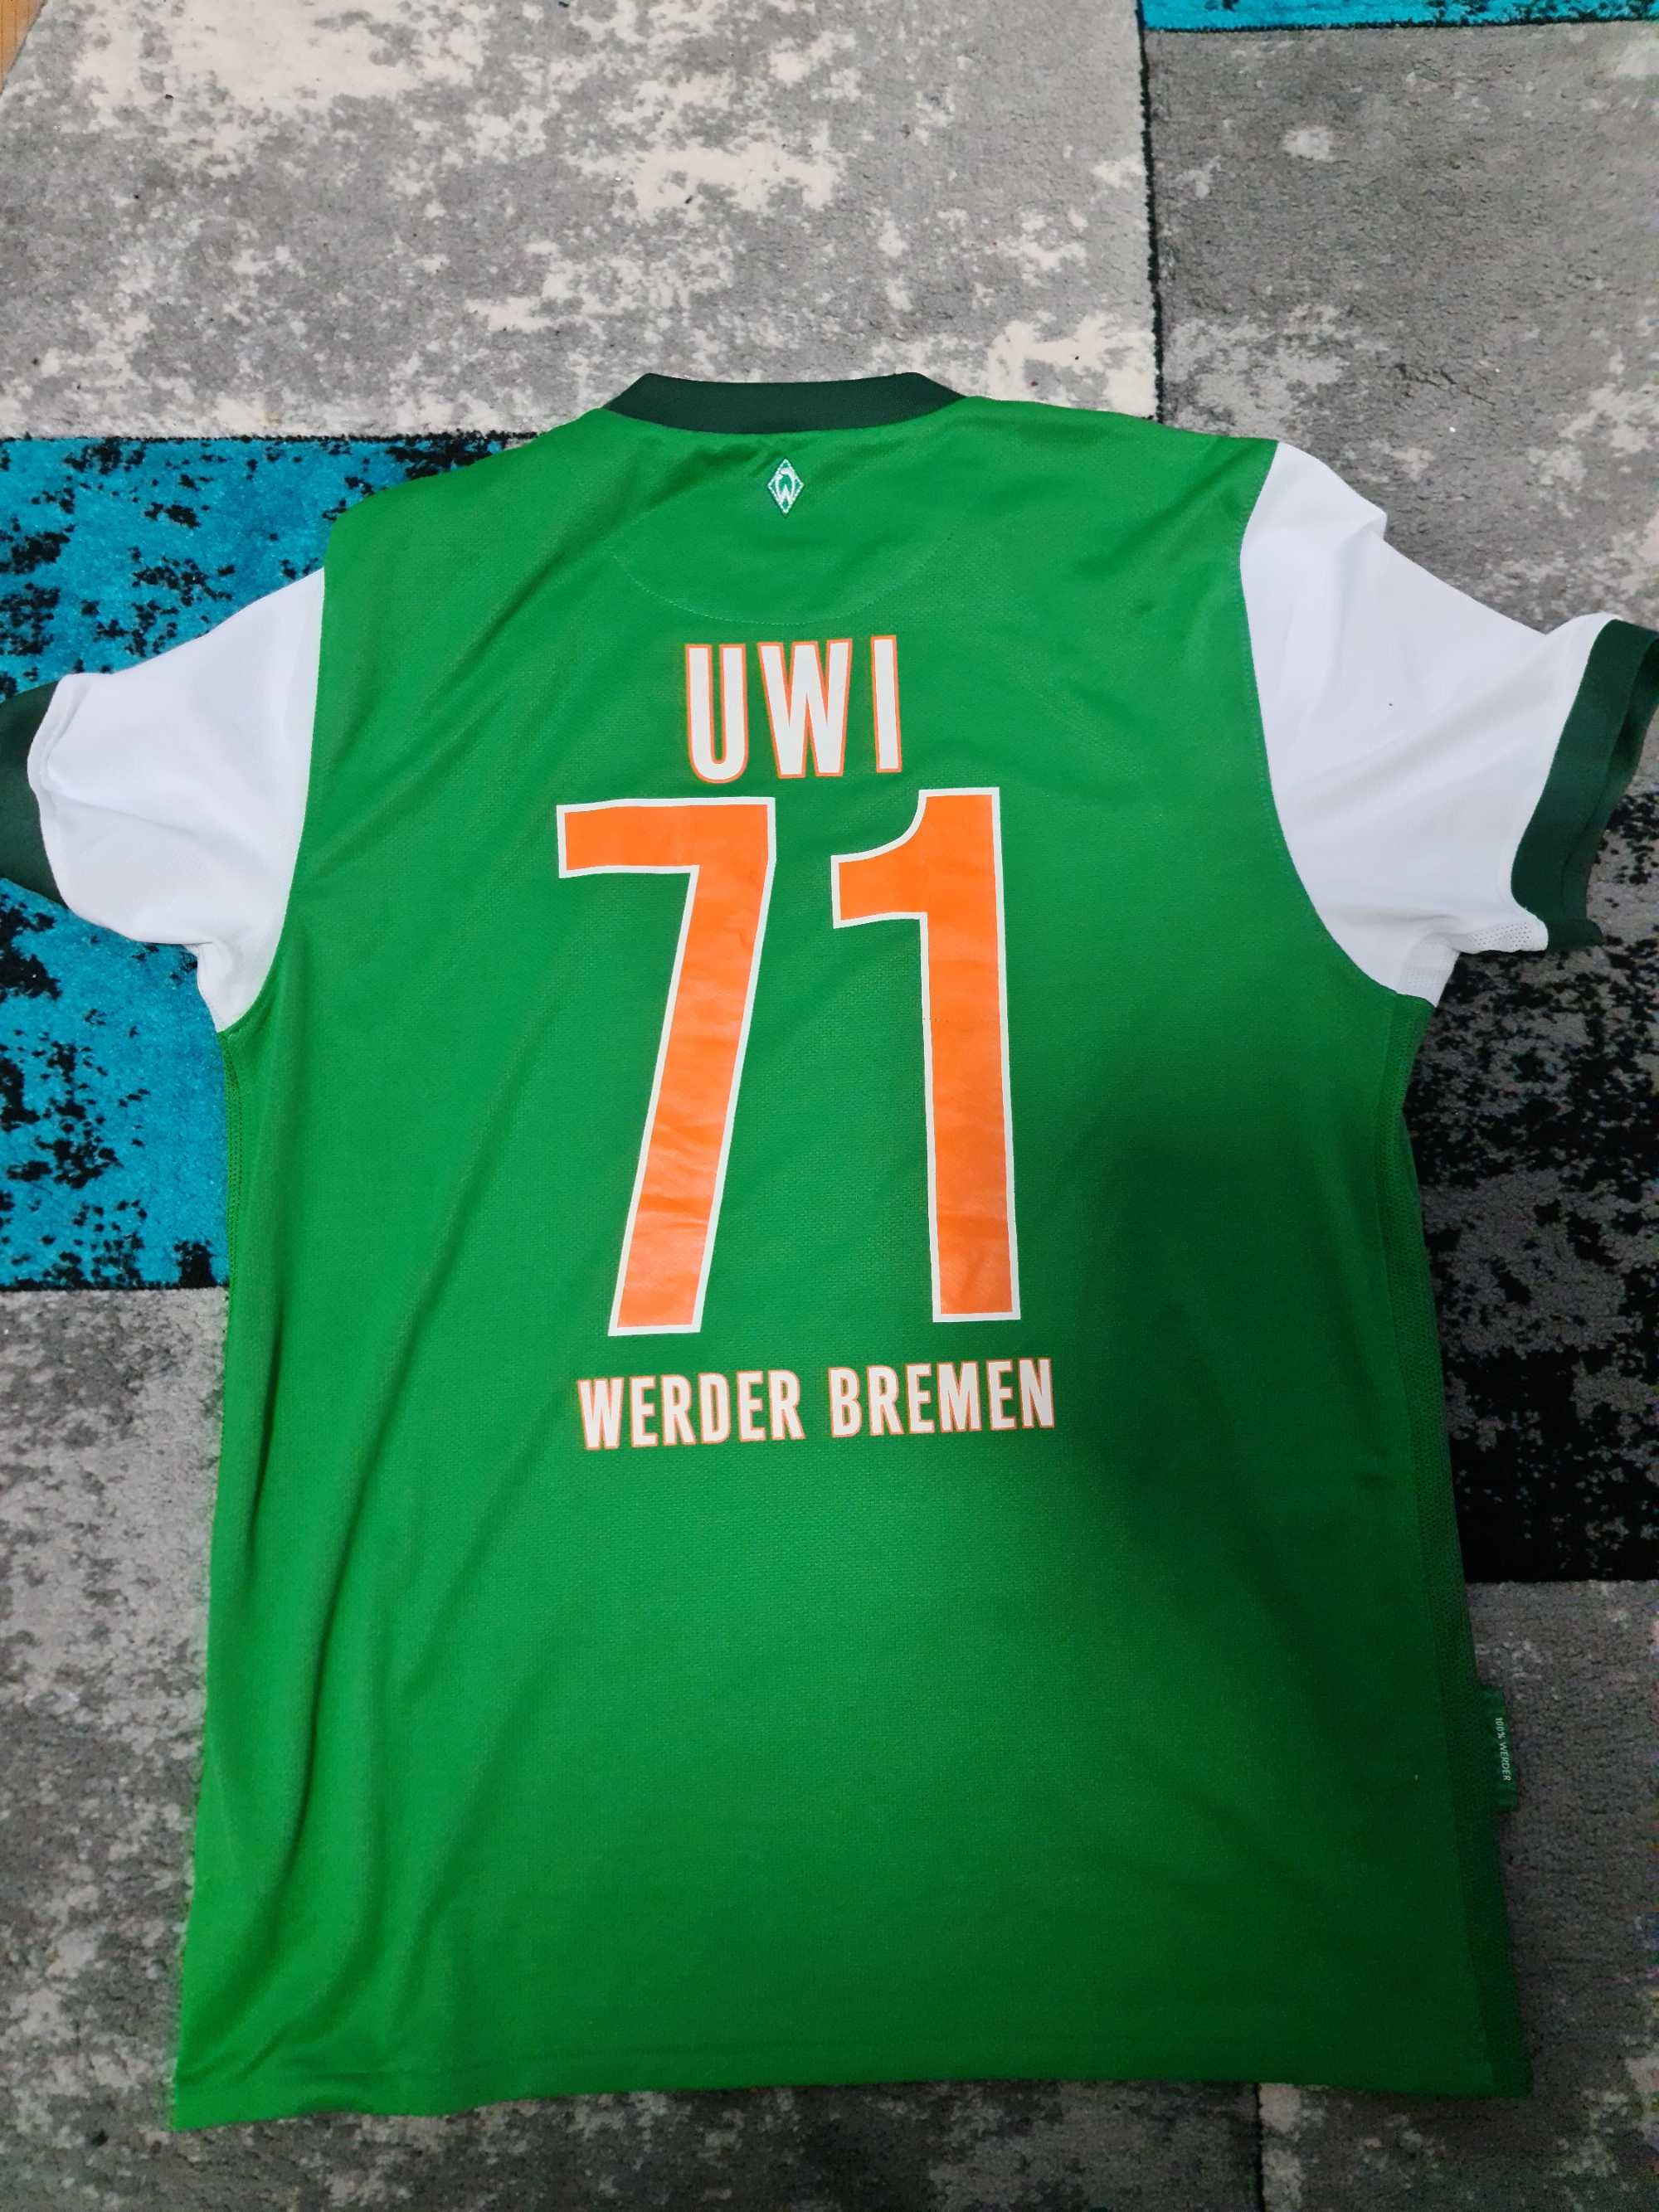 Tricou Werder Bremen 71 UWI Nike original mărimea L